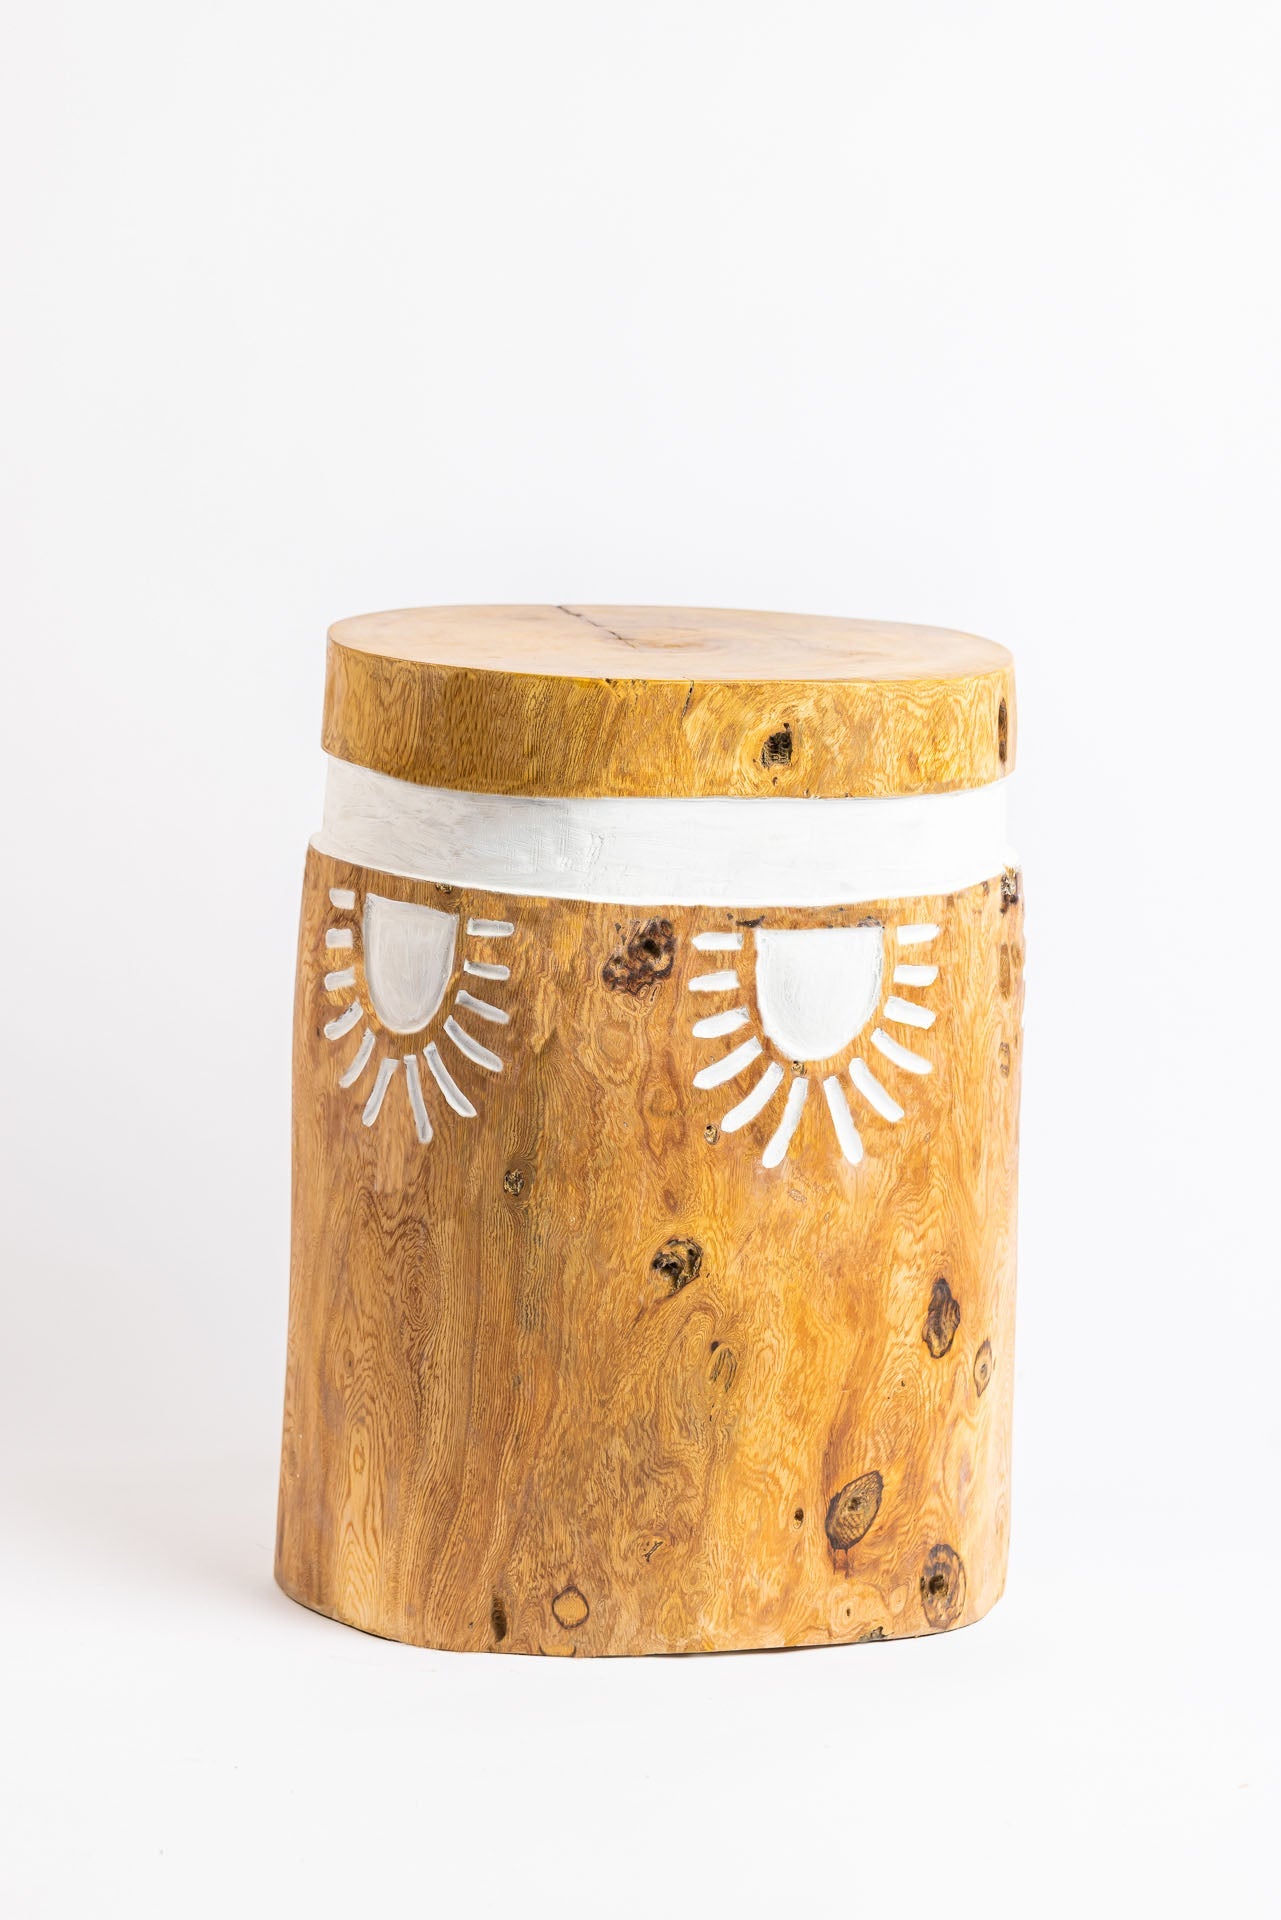 Sunburst Tree Stump Stool / Side Table - Bohowoodland